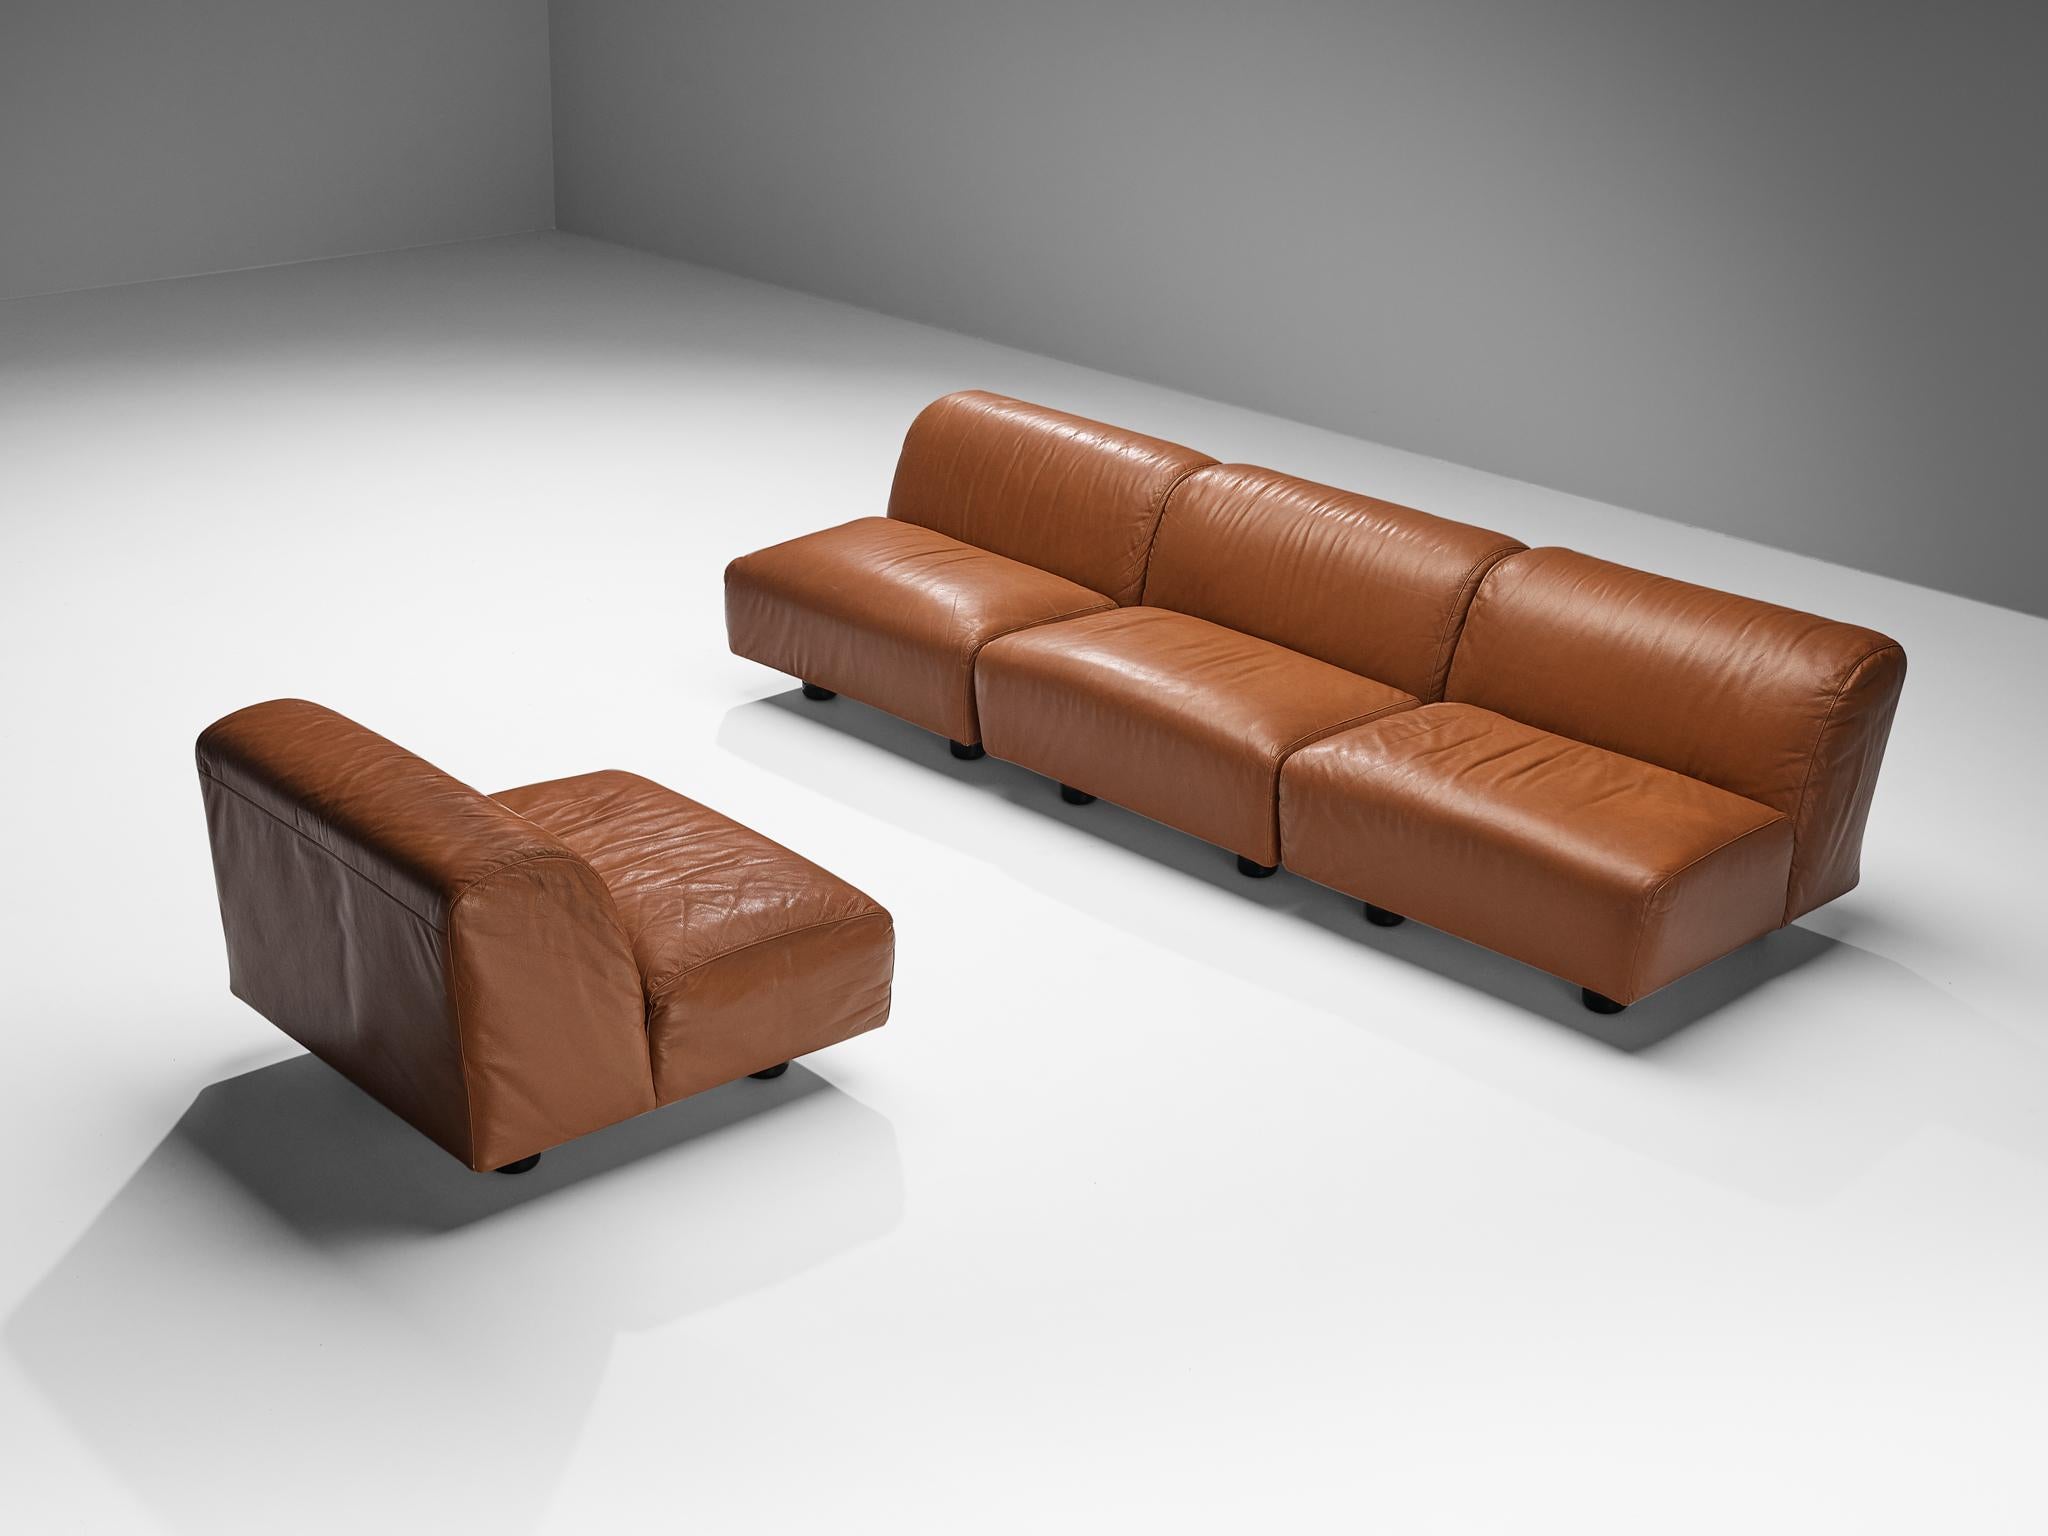 Vico Magistretti for Cassina 'Fiandra' Modular Sofa in Brown Leather For Sale 2